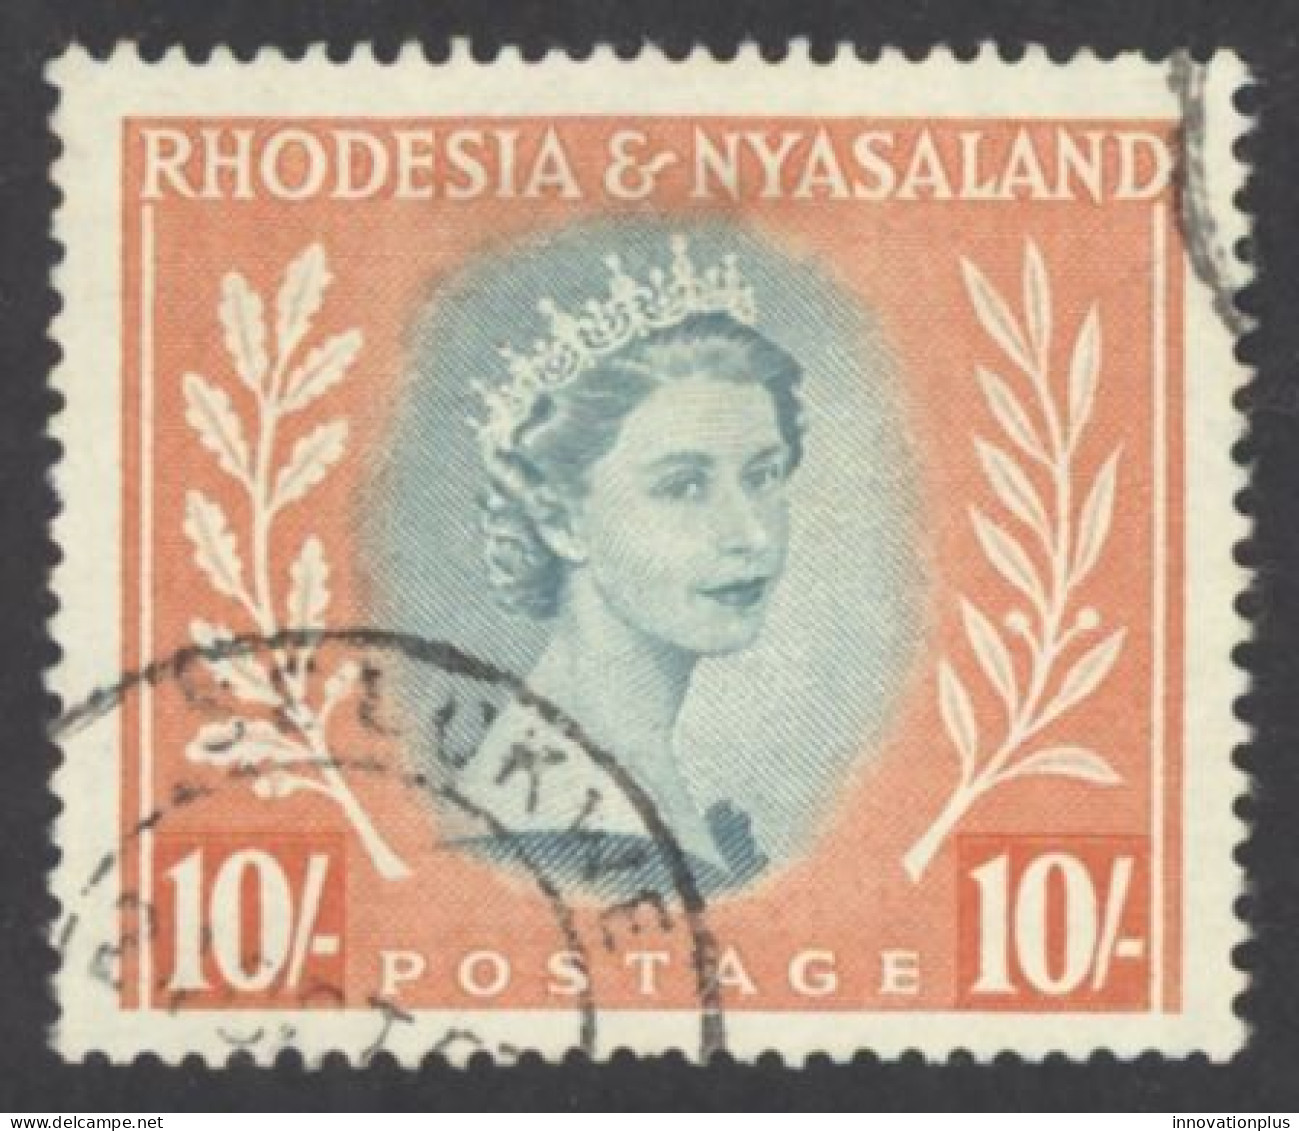 Rhodesia & Nyasaland Sc# 154 Used 1954-1956 10sh QEII Definitives - Rodesia & Nyasaland (1954-1963)